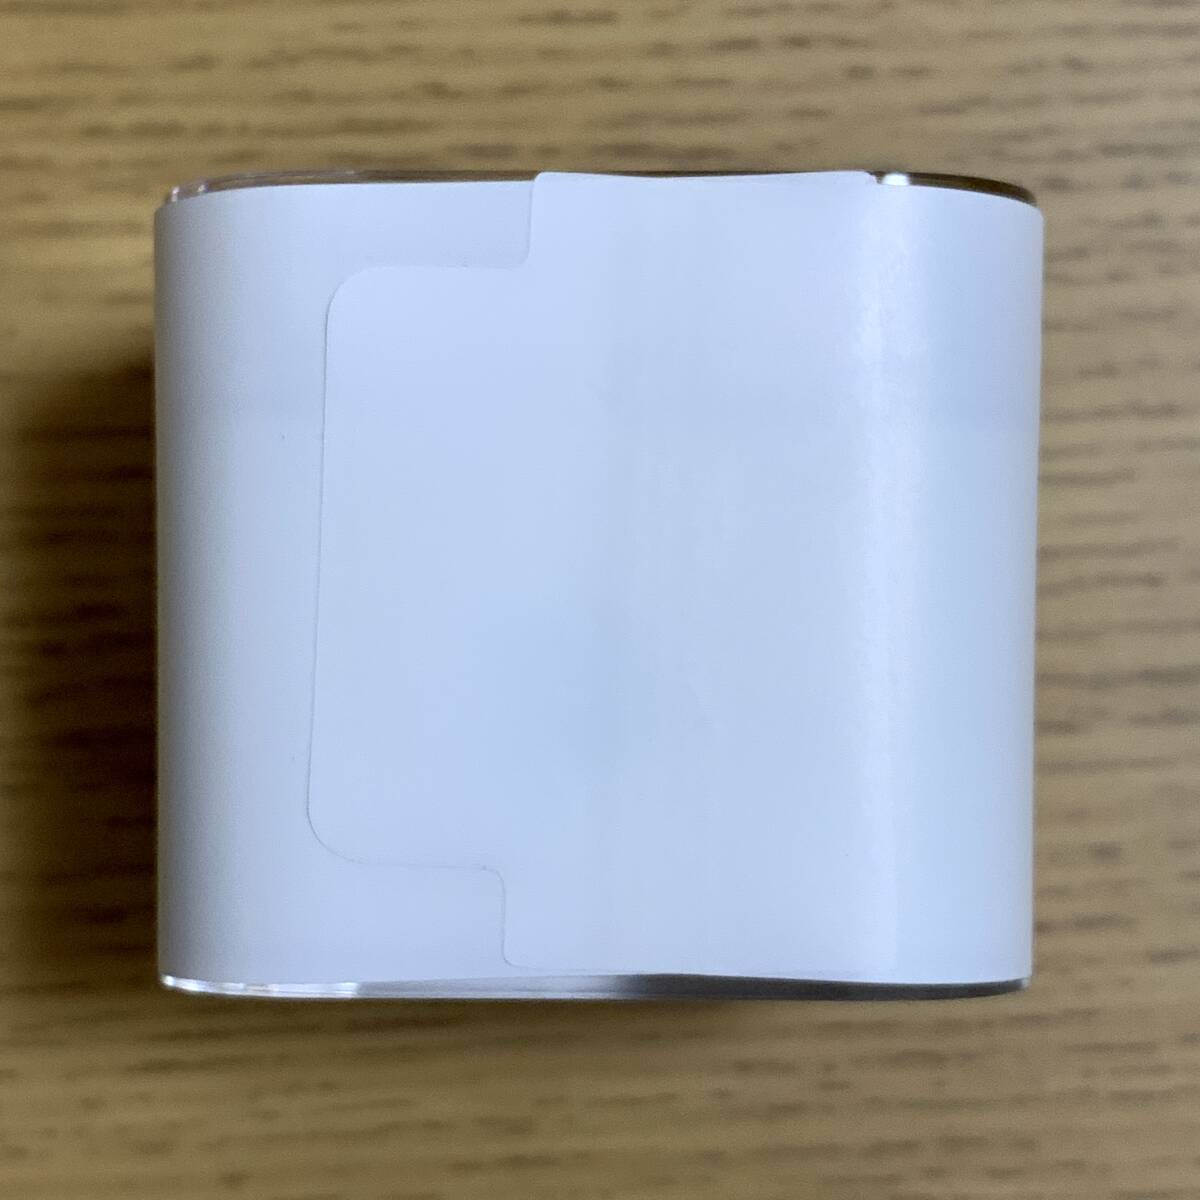 [ новый товар нераспечатанный ] Apple Apple iPod shuffle корпус no. 4 поколение 2015 год модели Gold 2GB MKM92J/A iPod автомобиль  полный экстерьер плёнка есть 